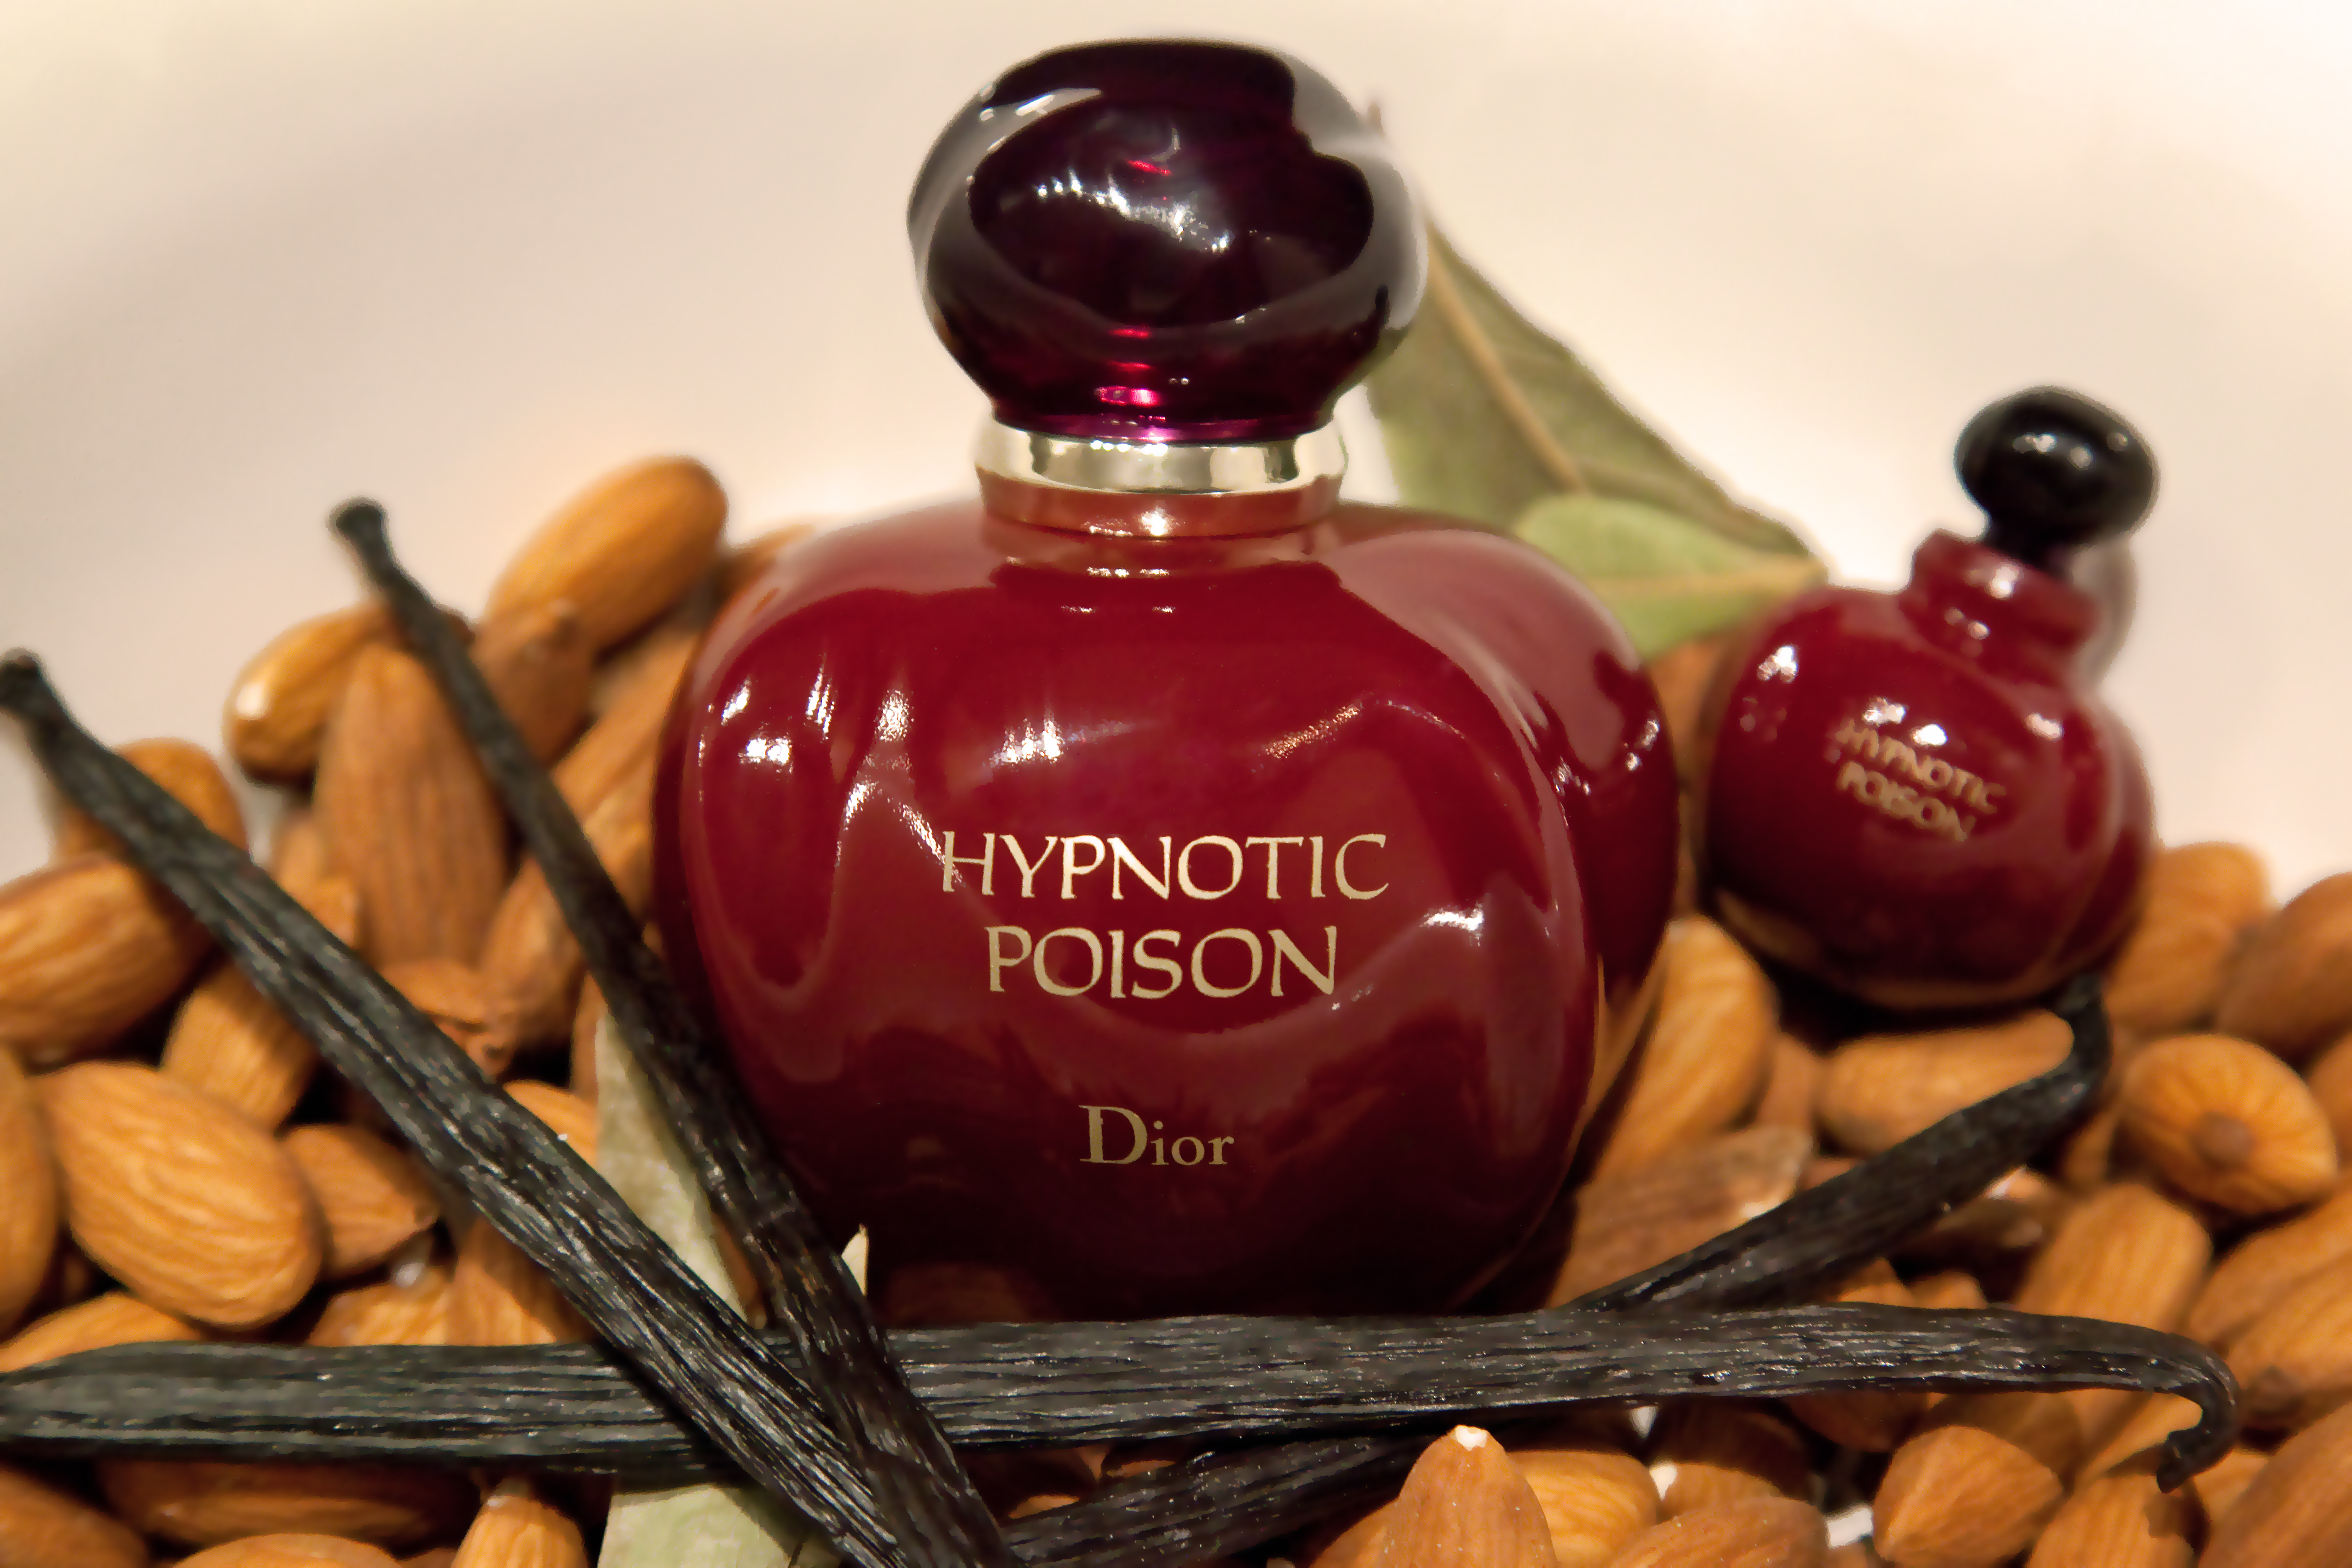 poison perfume notes